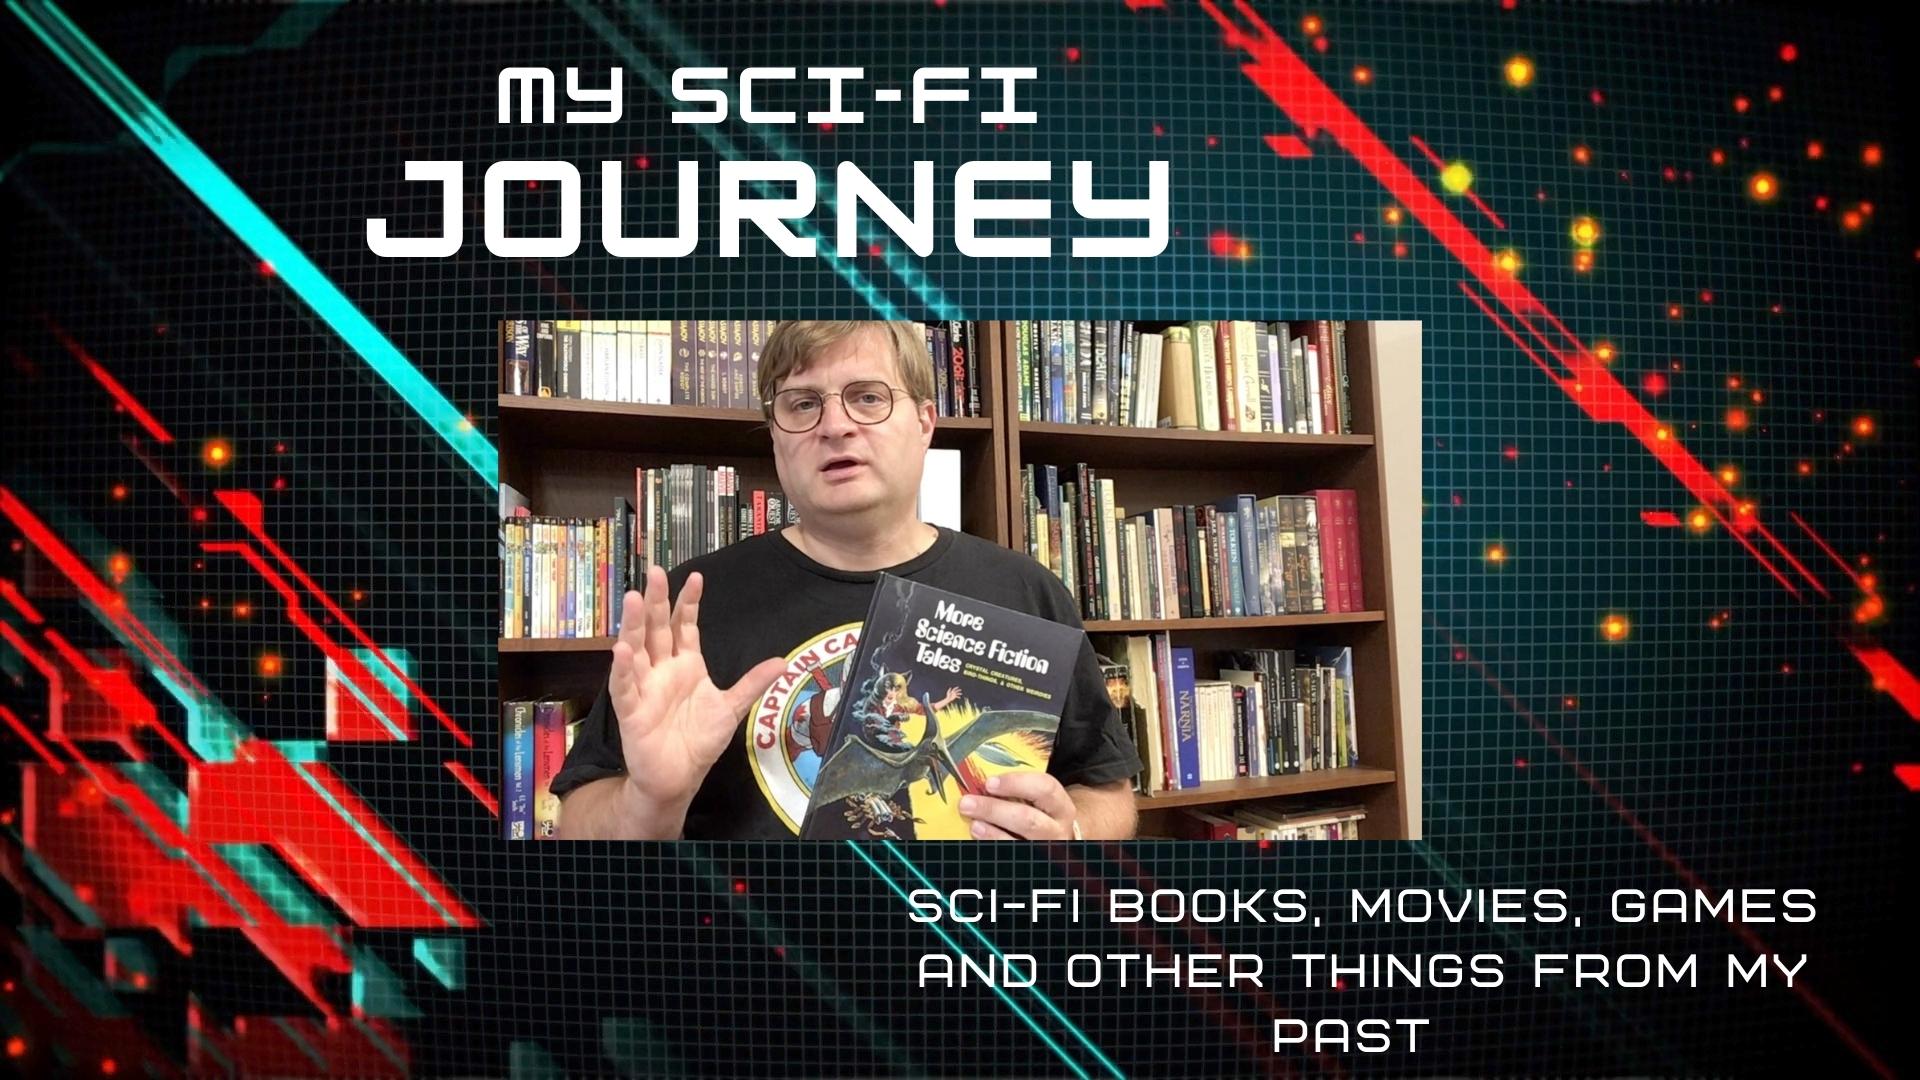 Unboxing a Sci-Fi Anthology (My Sci-Fi Journey)